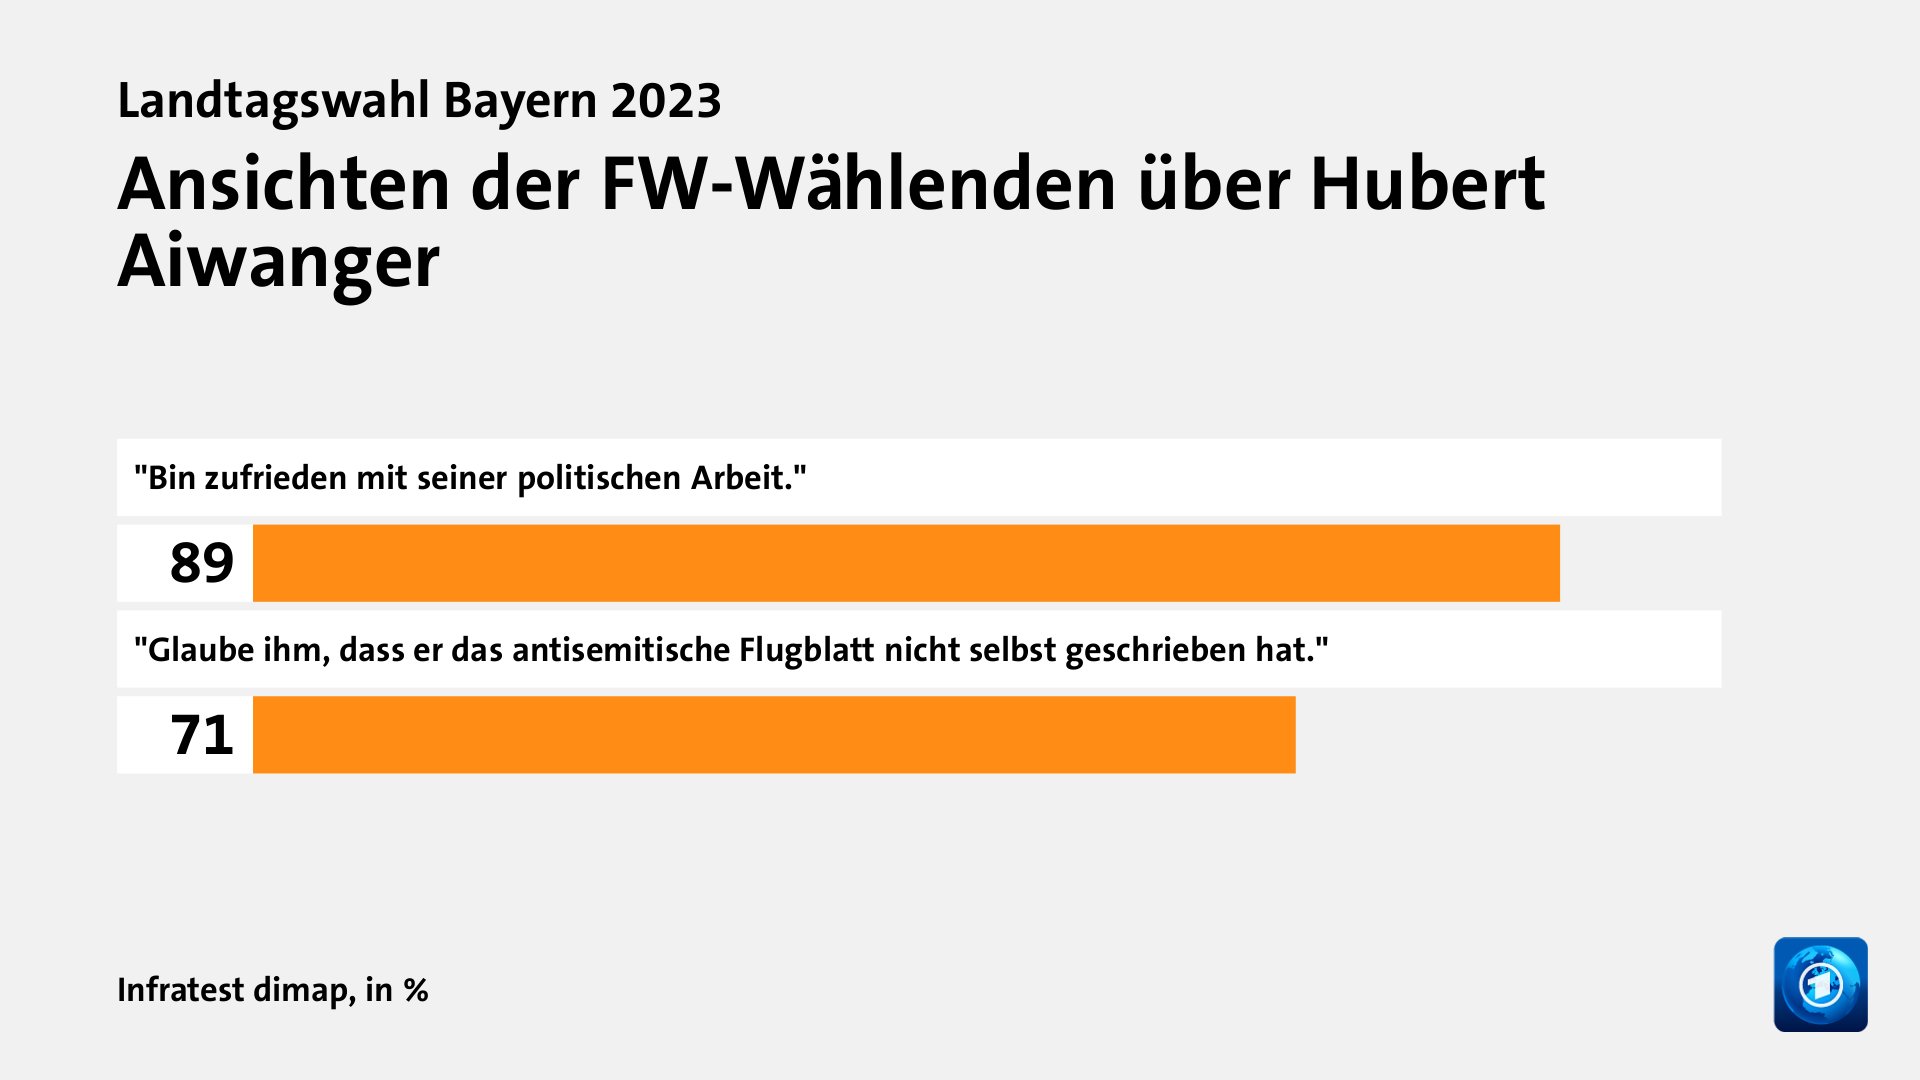 Ansichten der FW-Wählenden über Hubert Aiwanger, in %: 